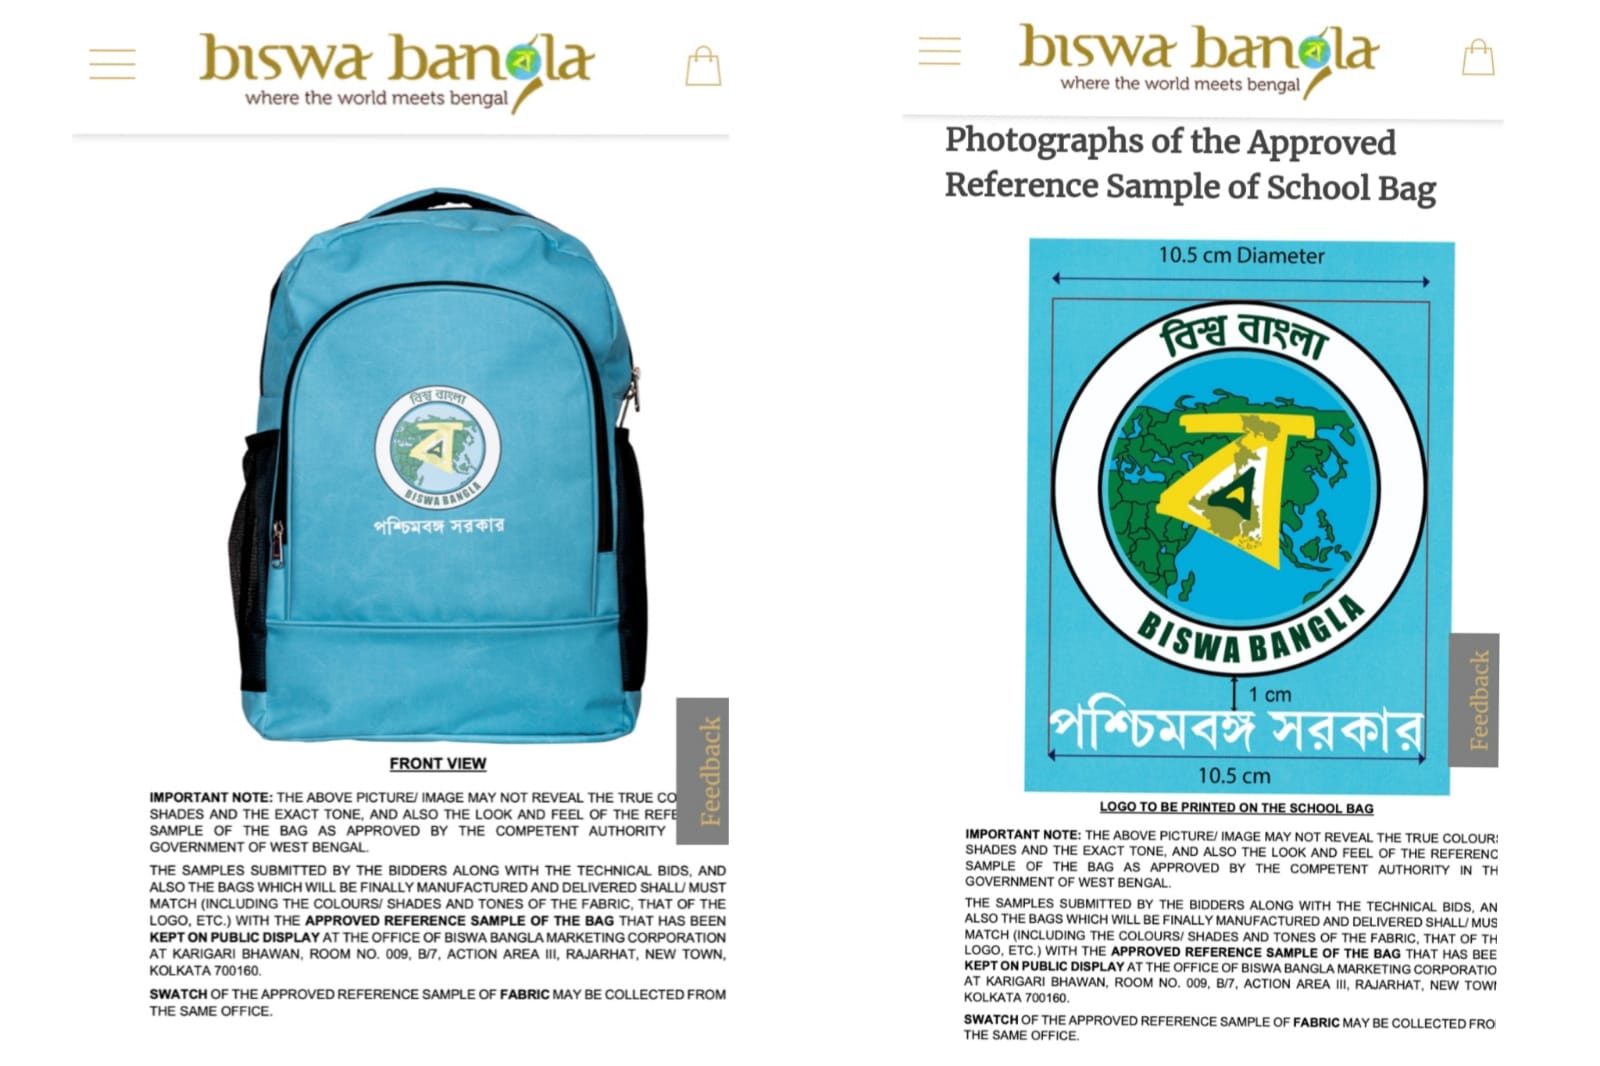 Biswa Bangla Logo on school bag